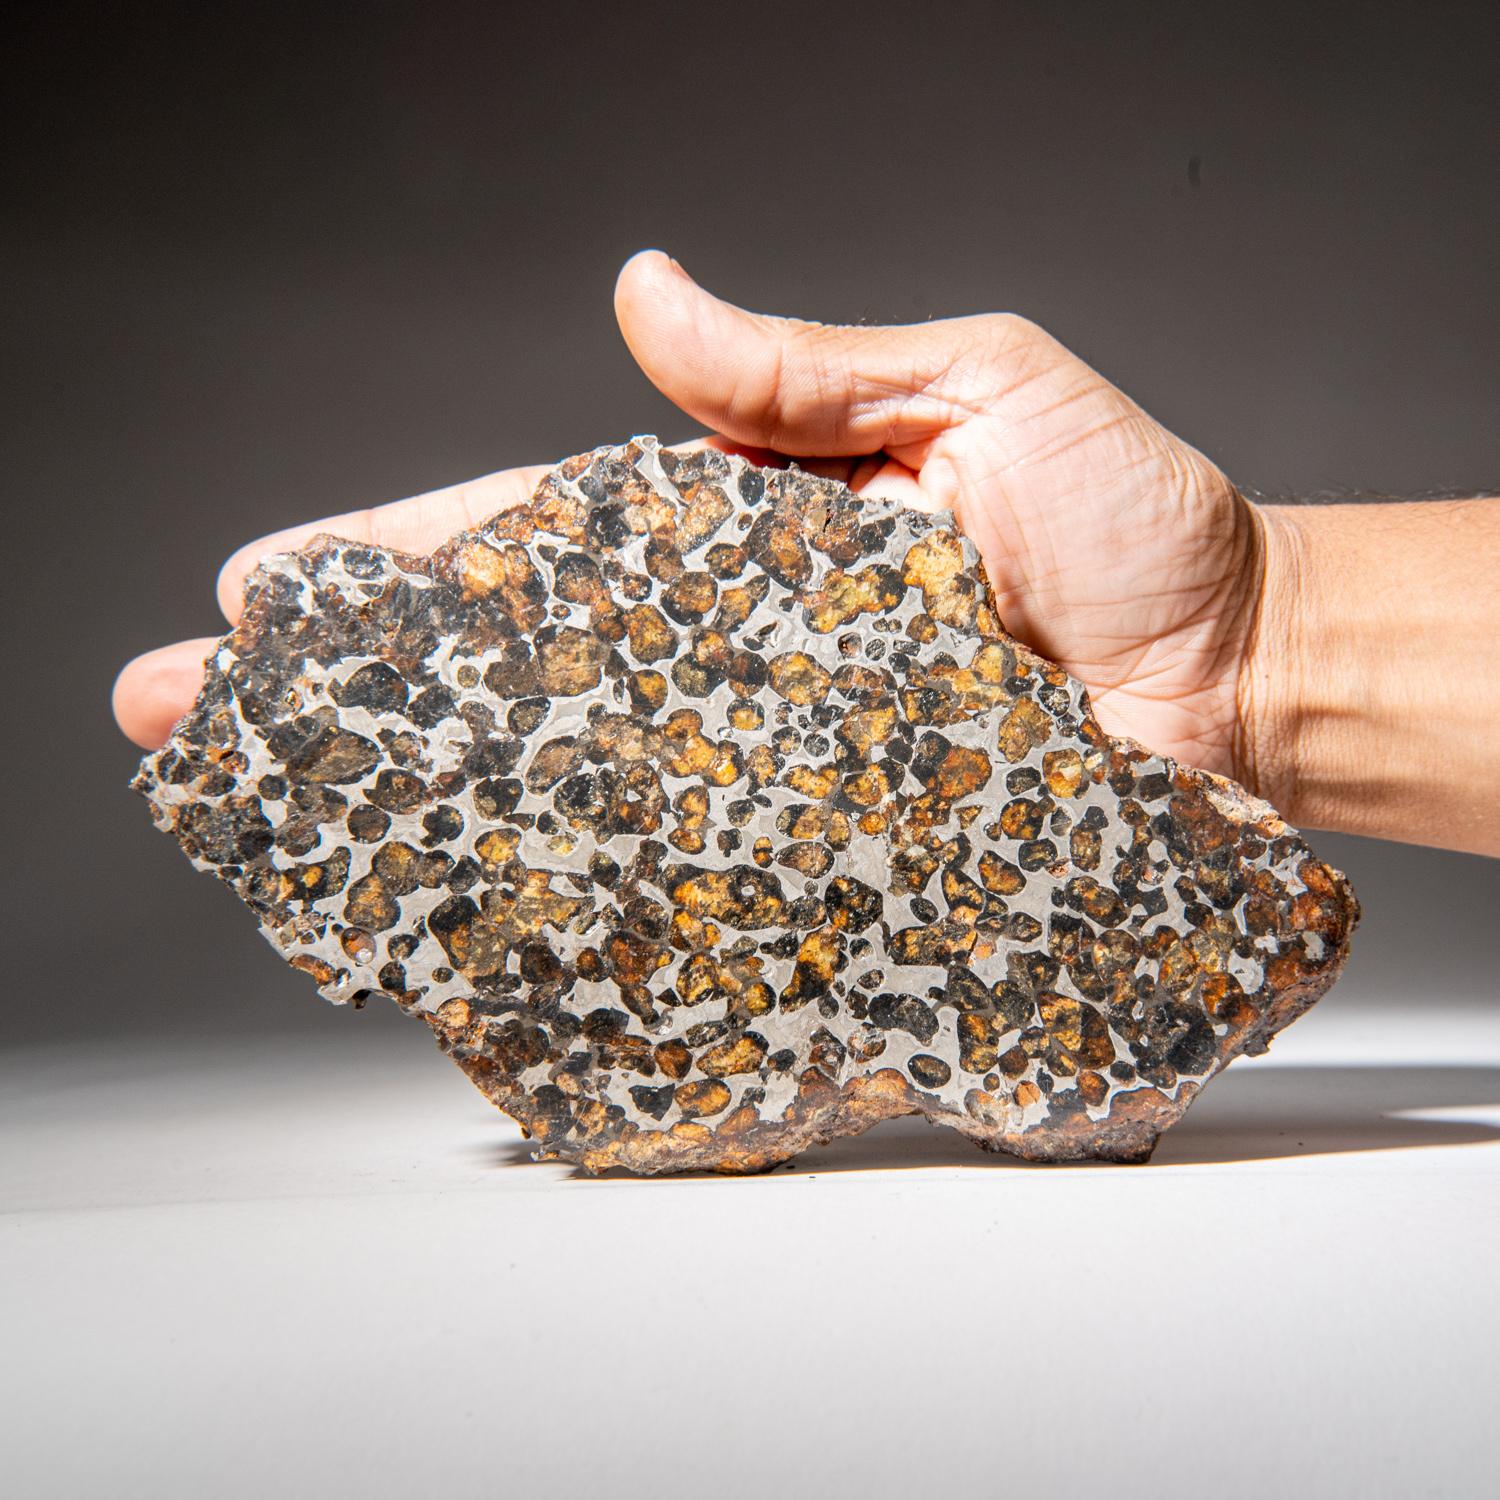 Kényan série Sericho Pallasite plaque de météorite véritable (2,45 lbs) en vente